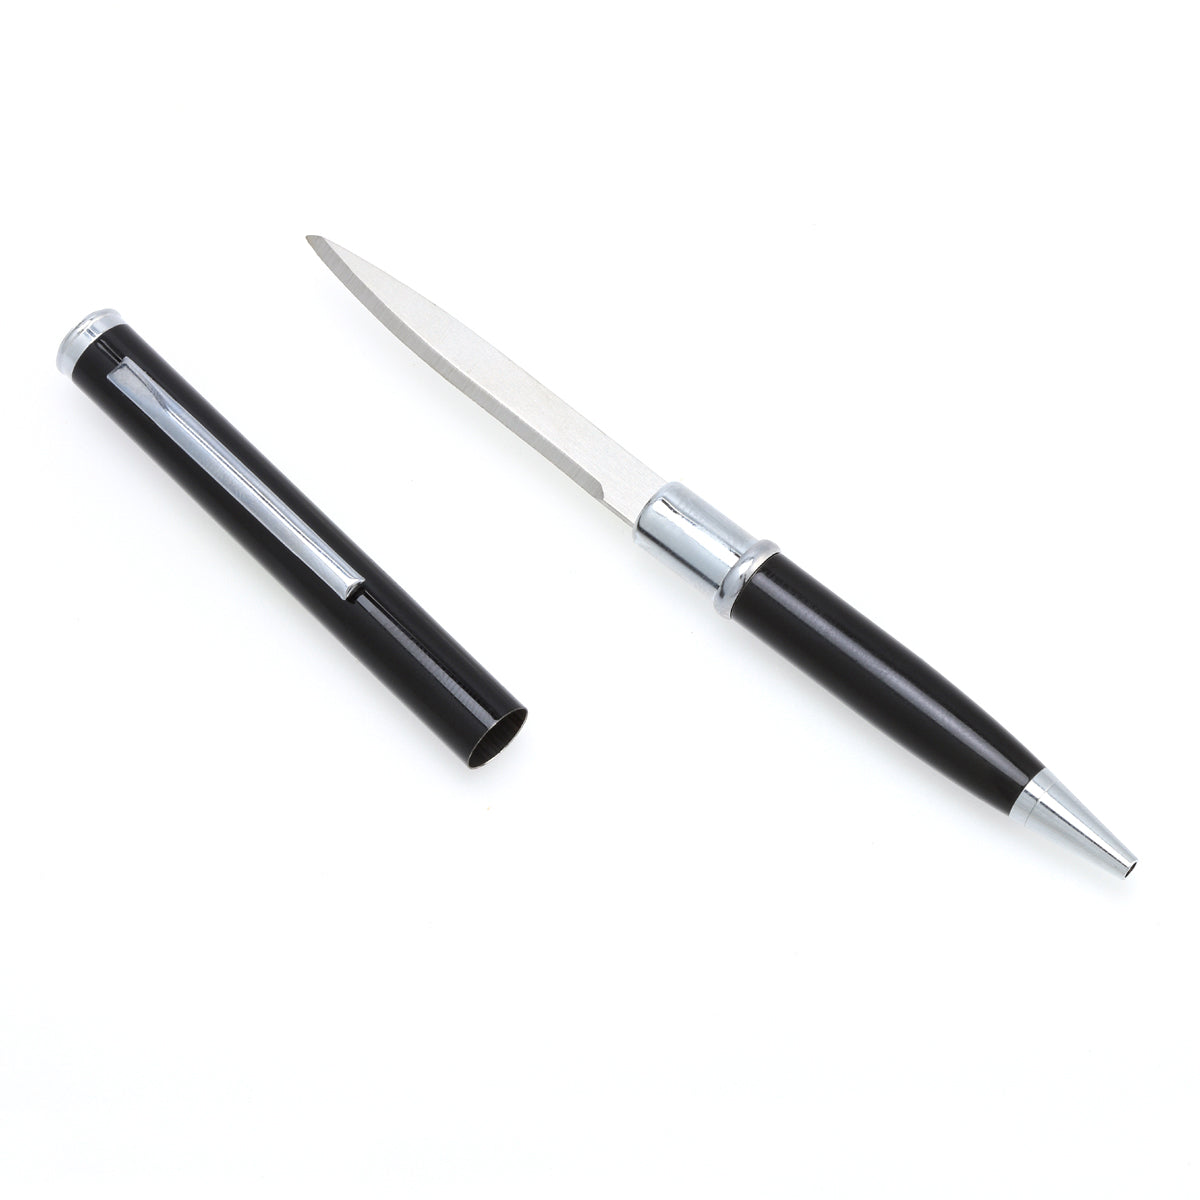 Black Pen Knife - CobraTec Knives